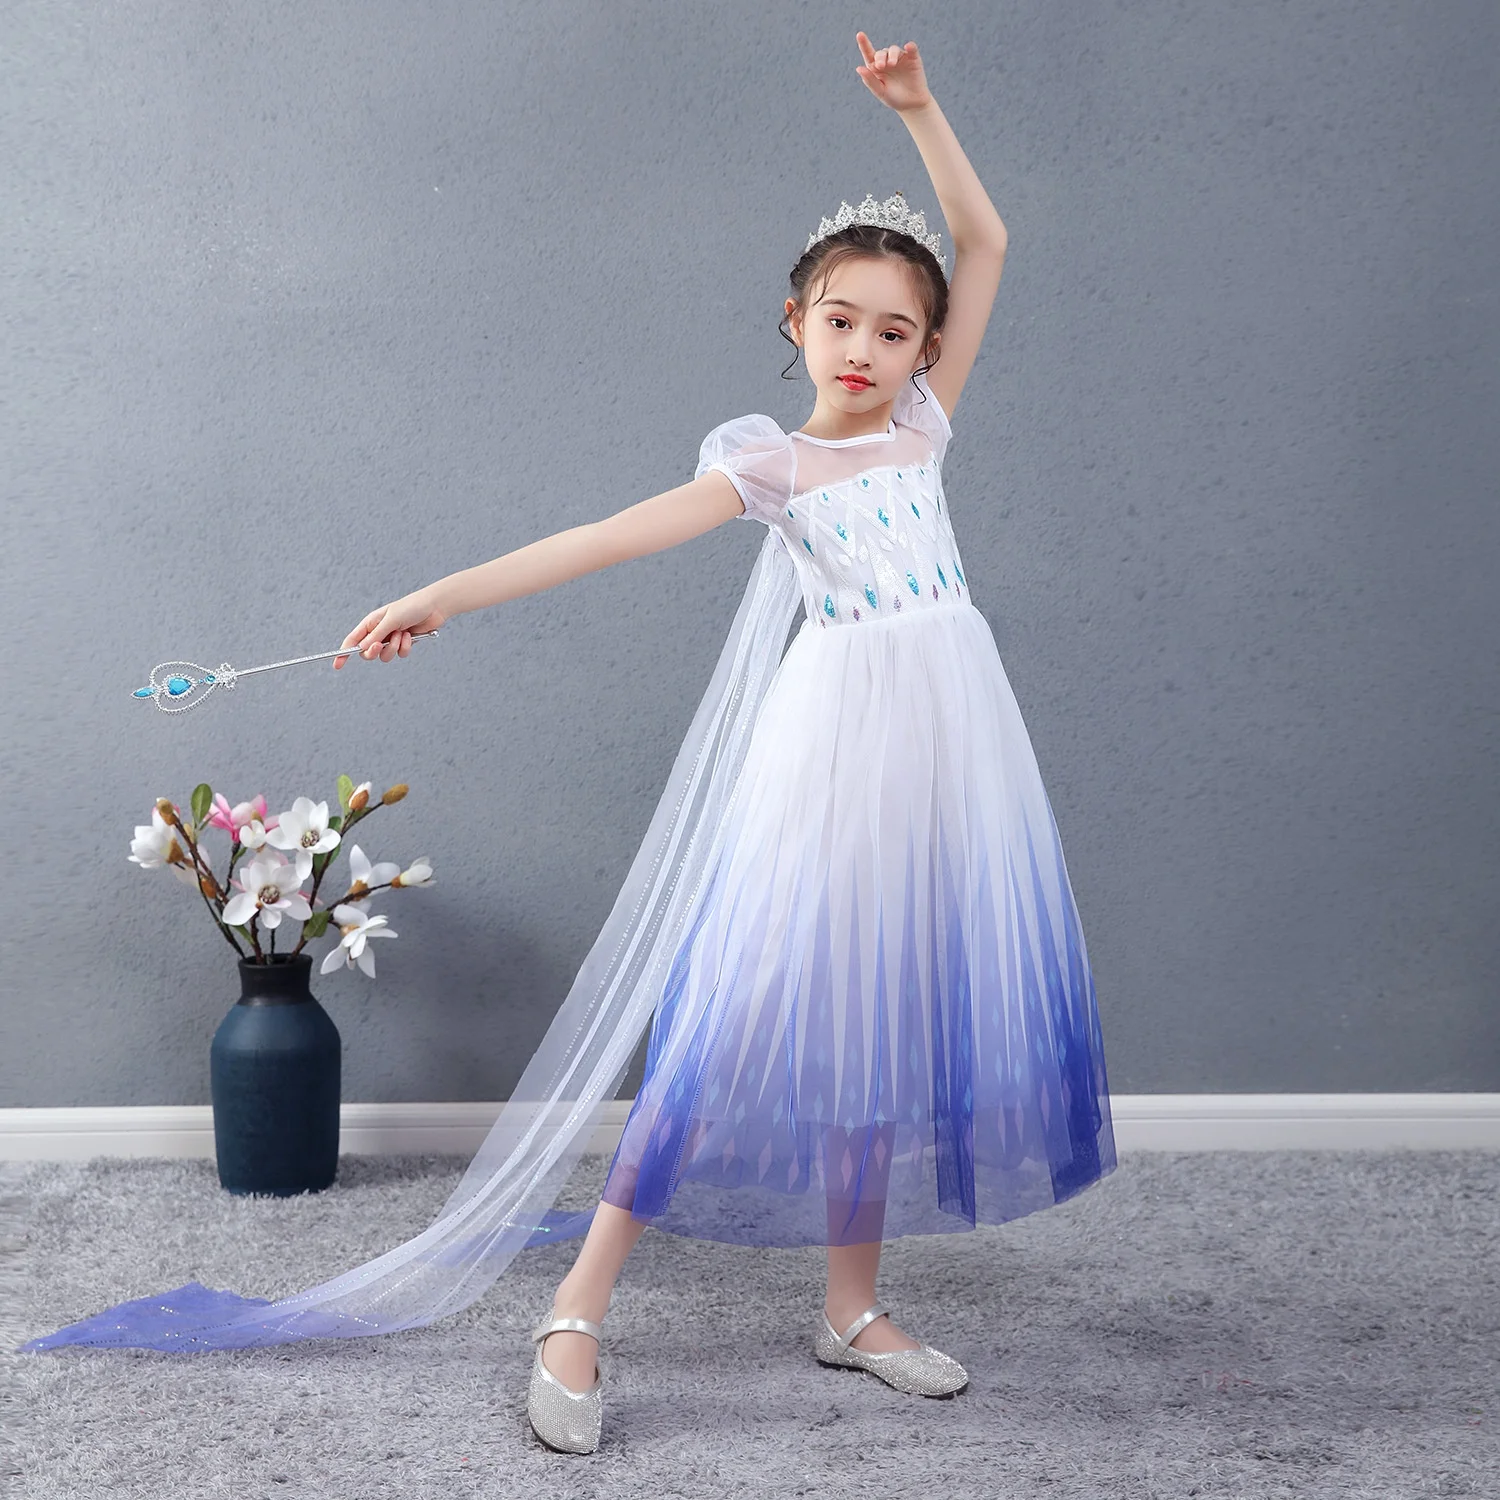 

High Quality New Elsa Costume Kids Anna Frozen 2 Dress Princess Ice Snow Queen Girl Summer Dress